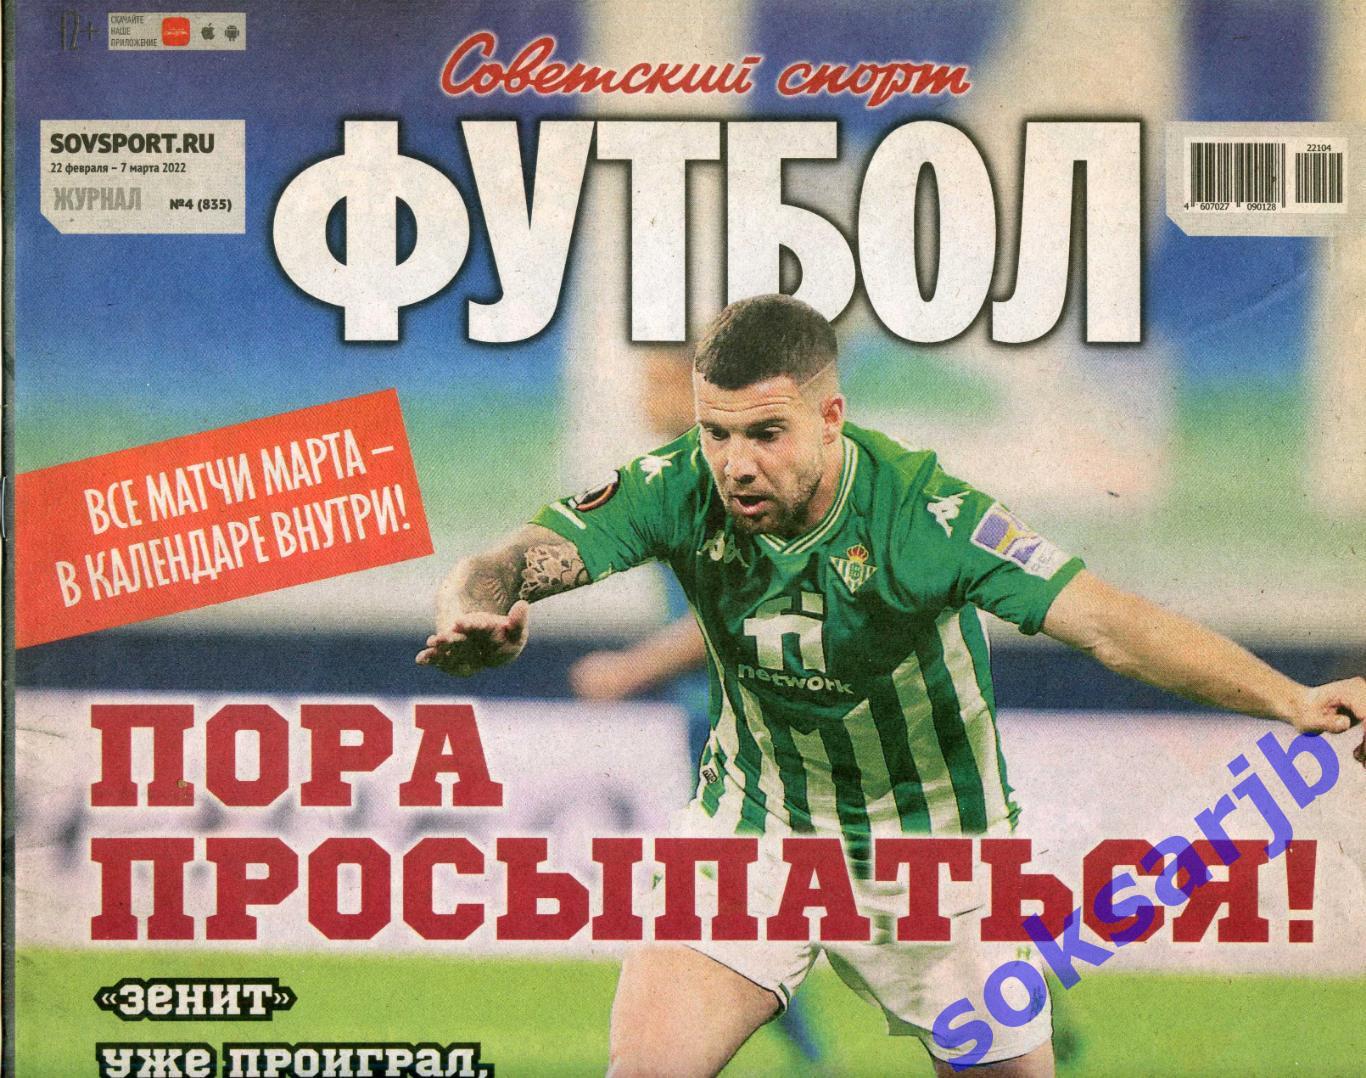 2022. Еженедельник Советский спорт - Футбол № 4 (835).